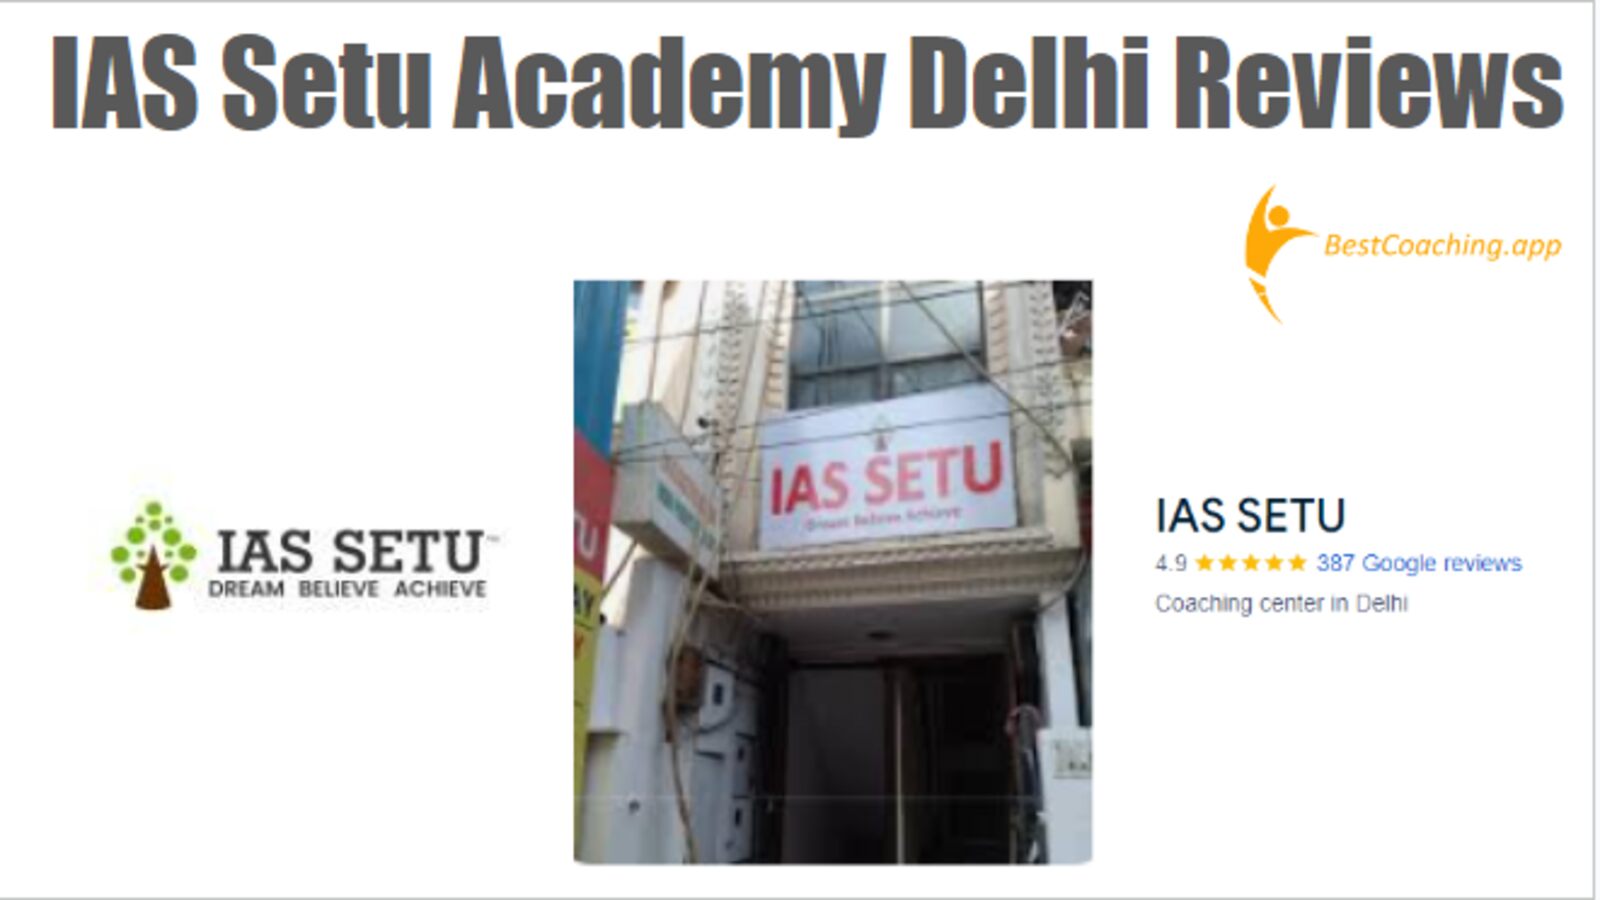 IAS Setu Academy Delhi Reviews